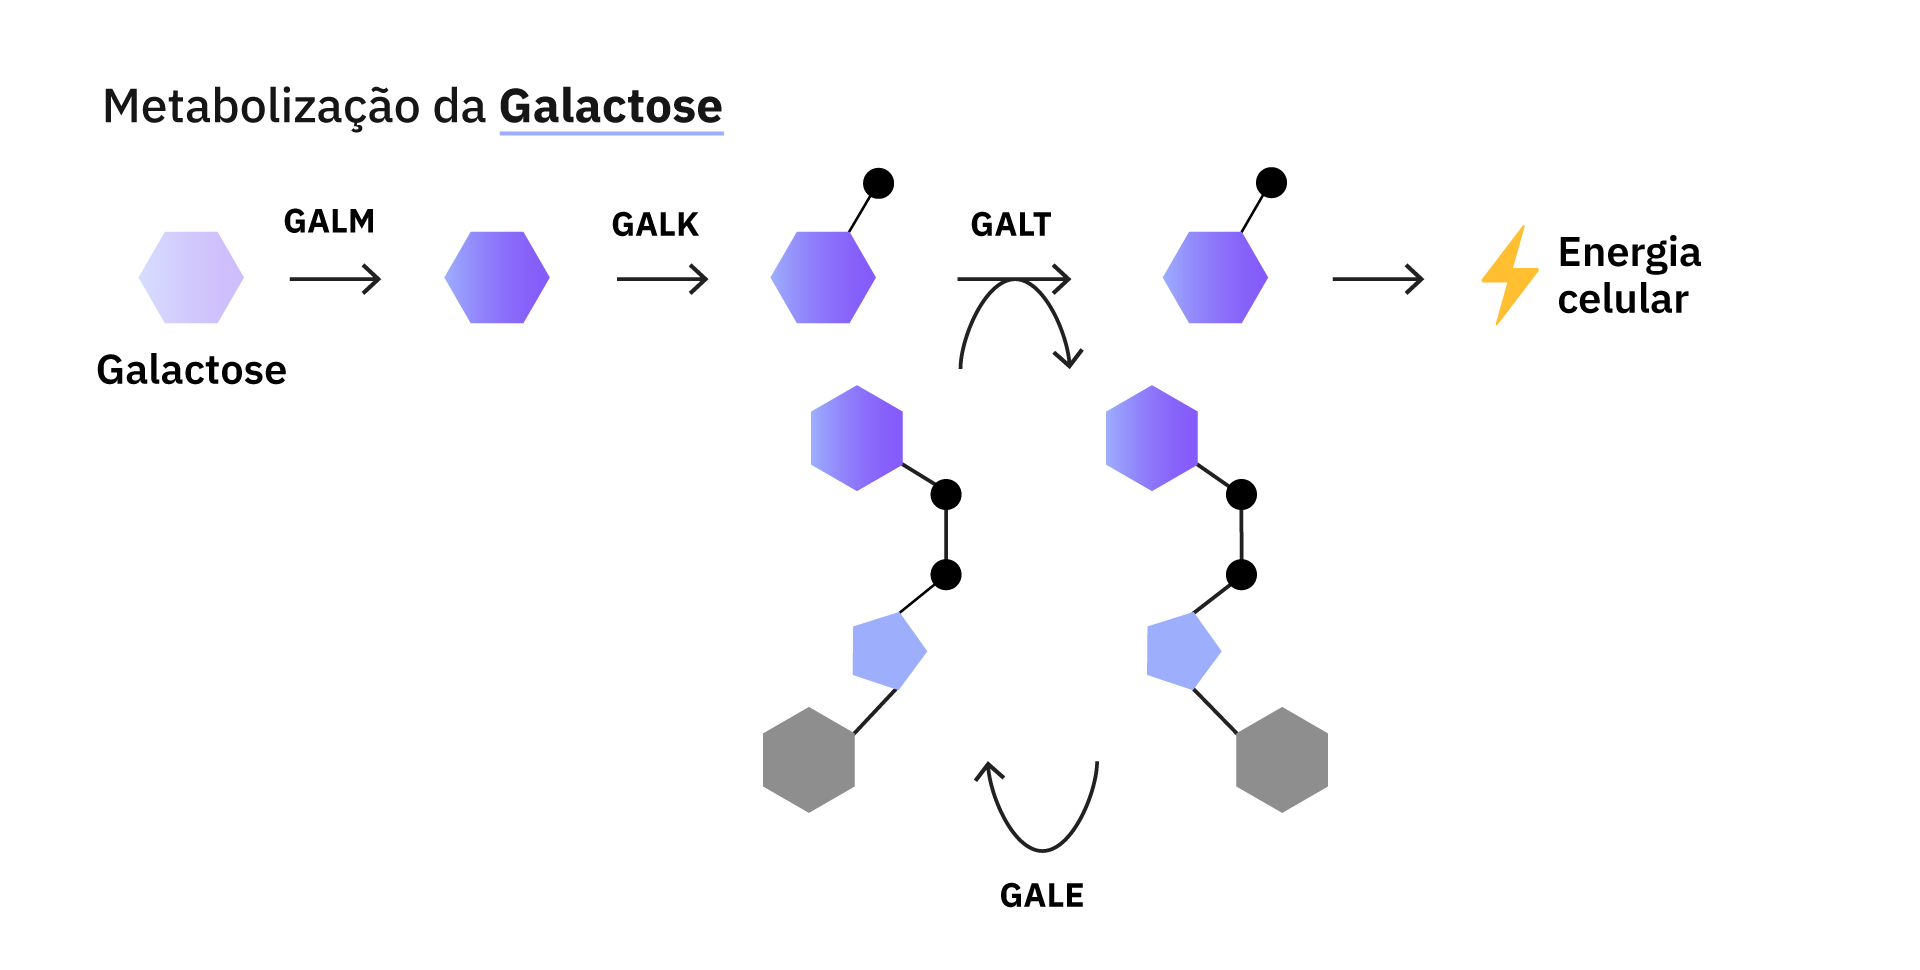 Metabolização da galactose